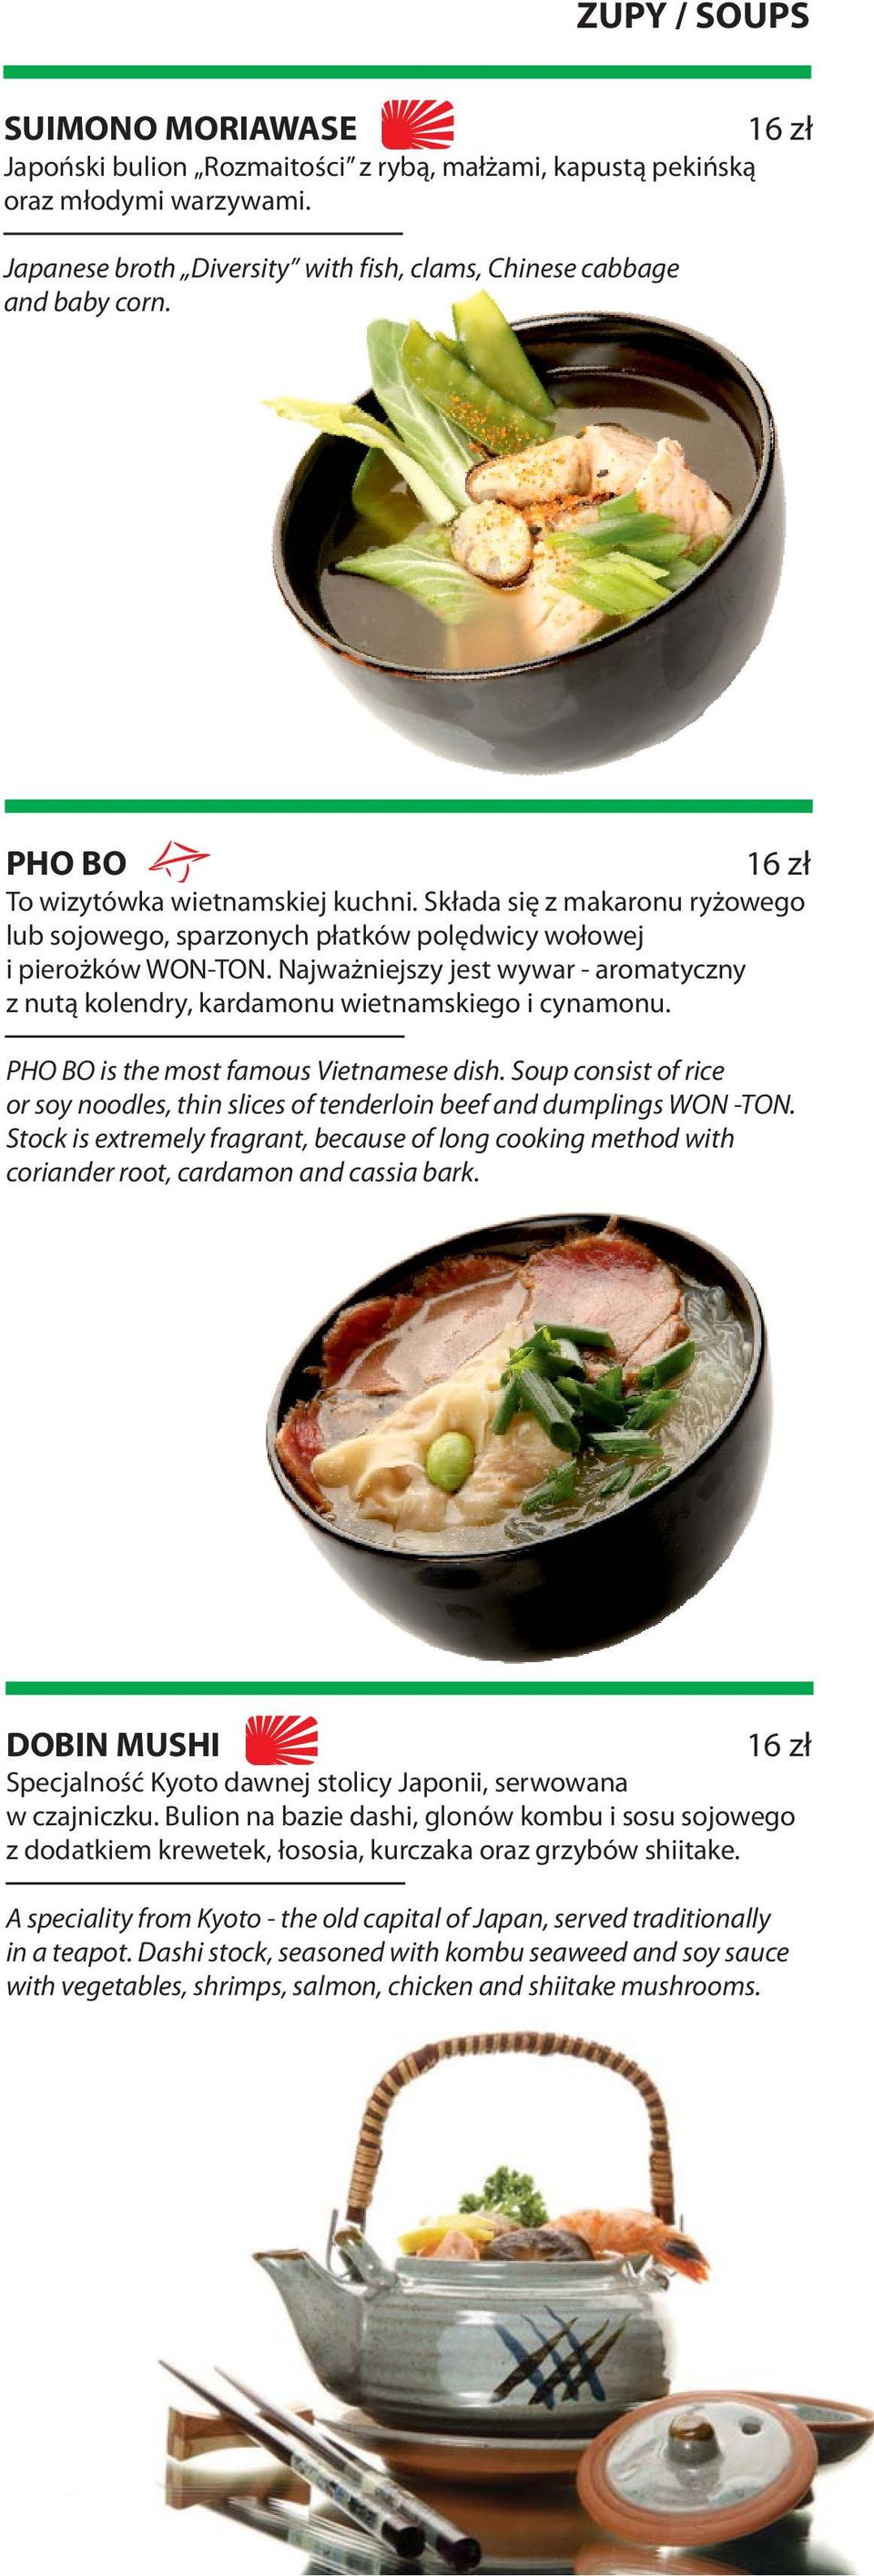 Najważniejszy jest wywar - aromatyczny z nutą kolendry, kardamonu wietnamskiego i cynamonu. PHO BO is the most famous Vietnamese dish.